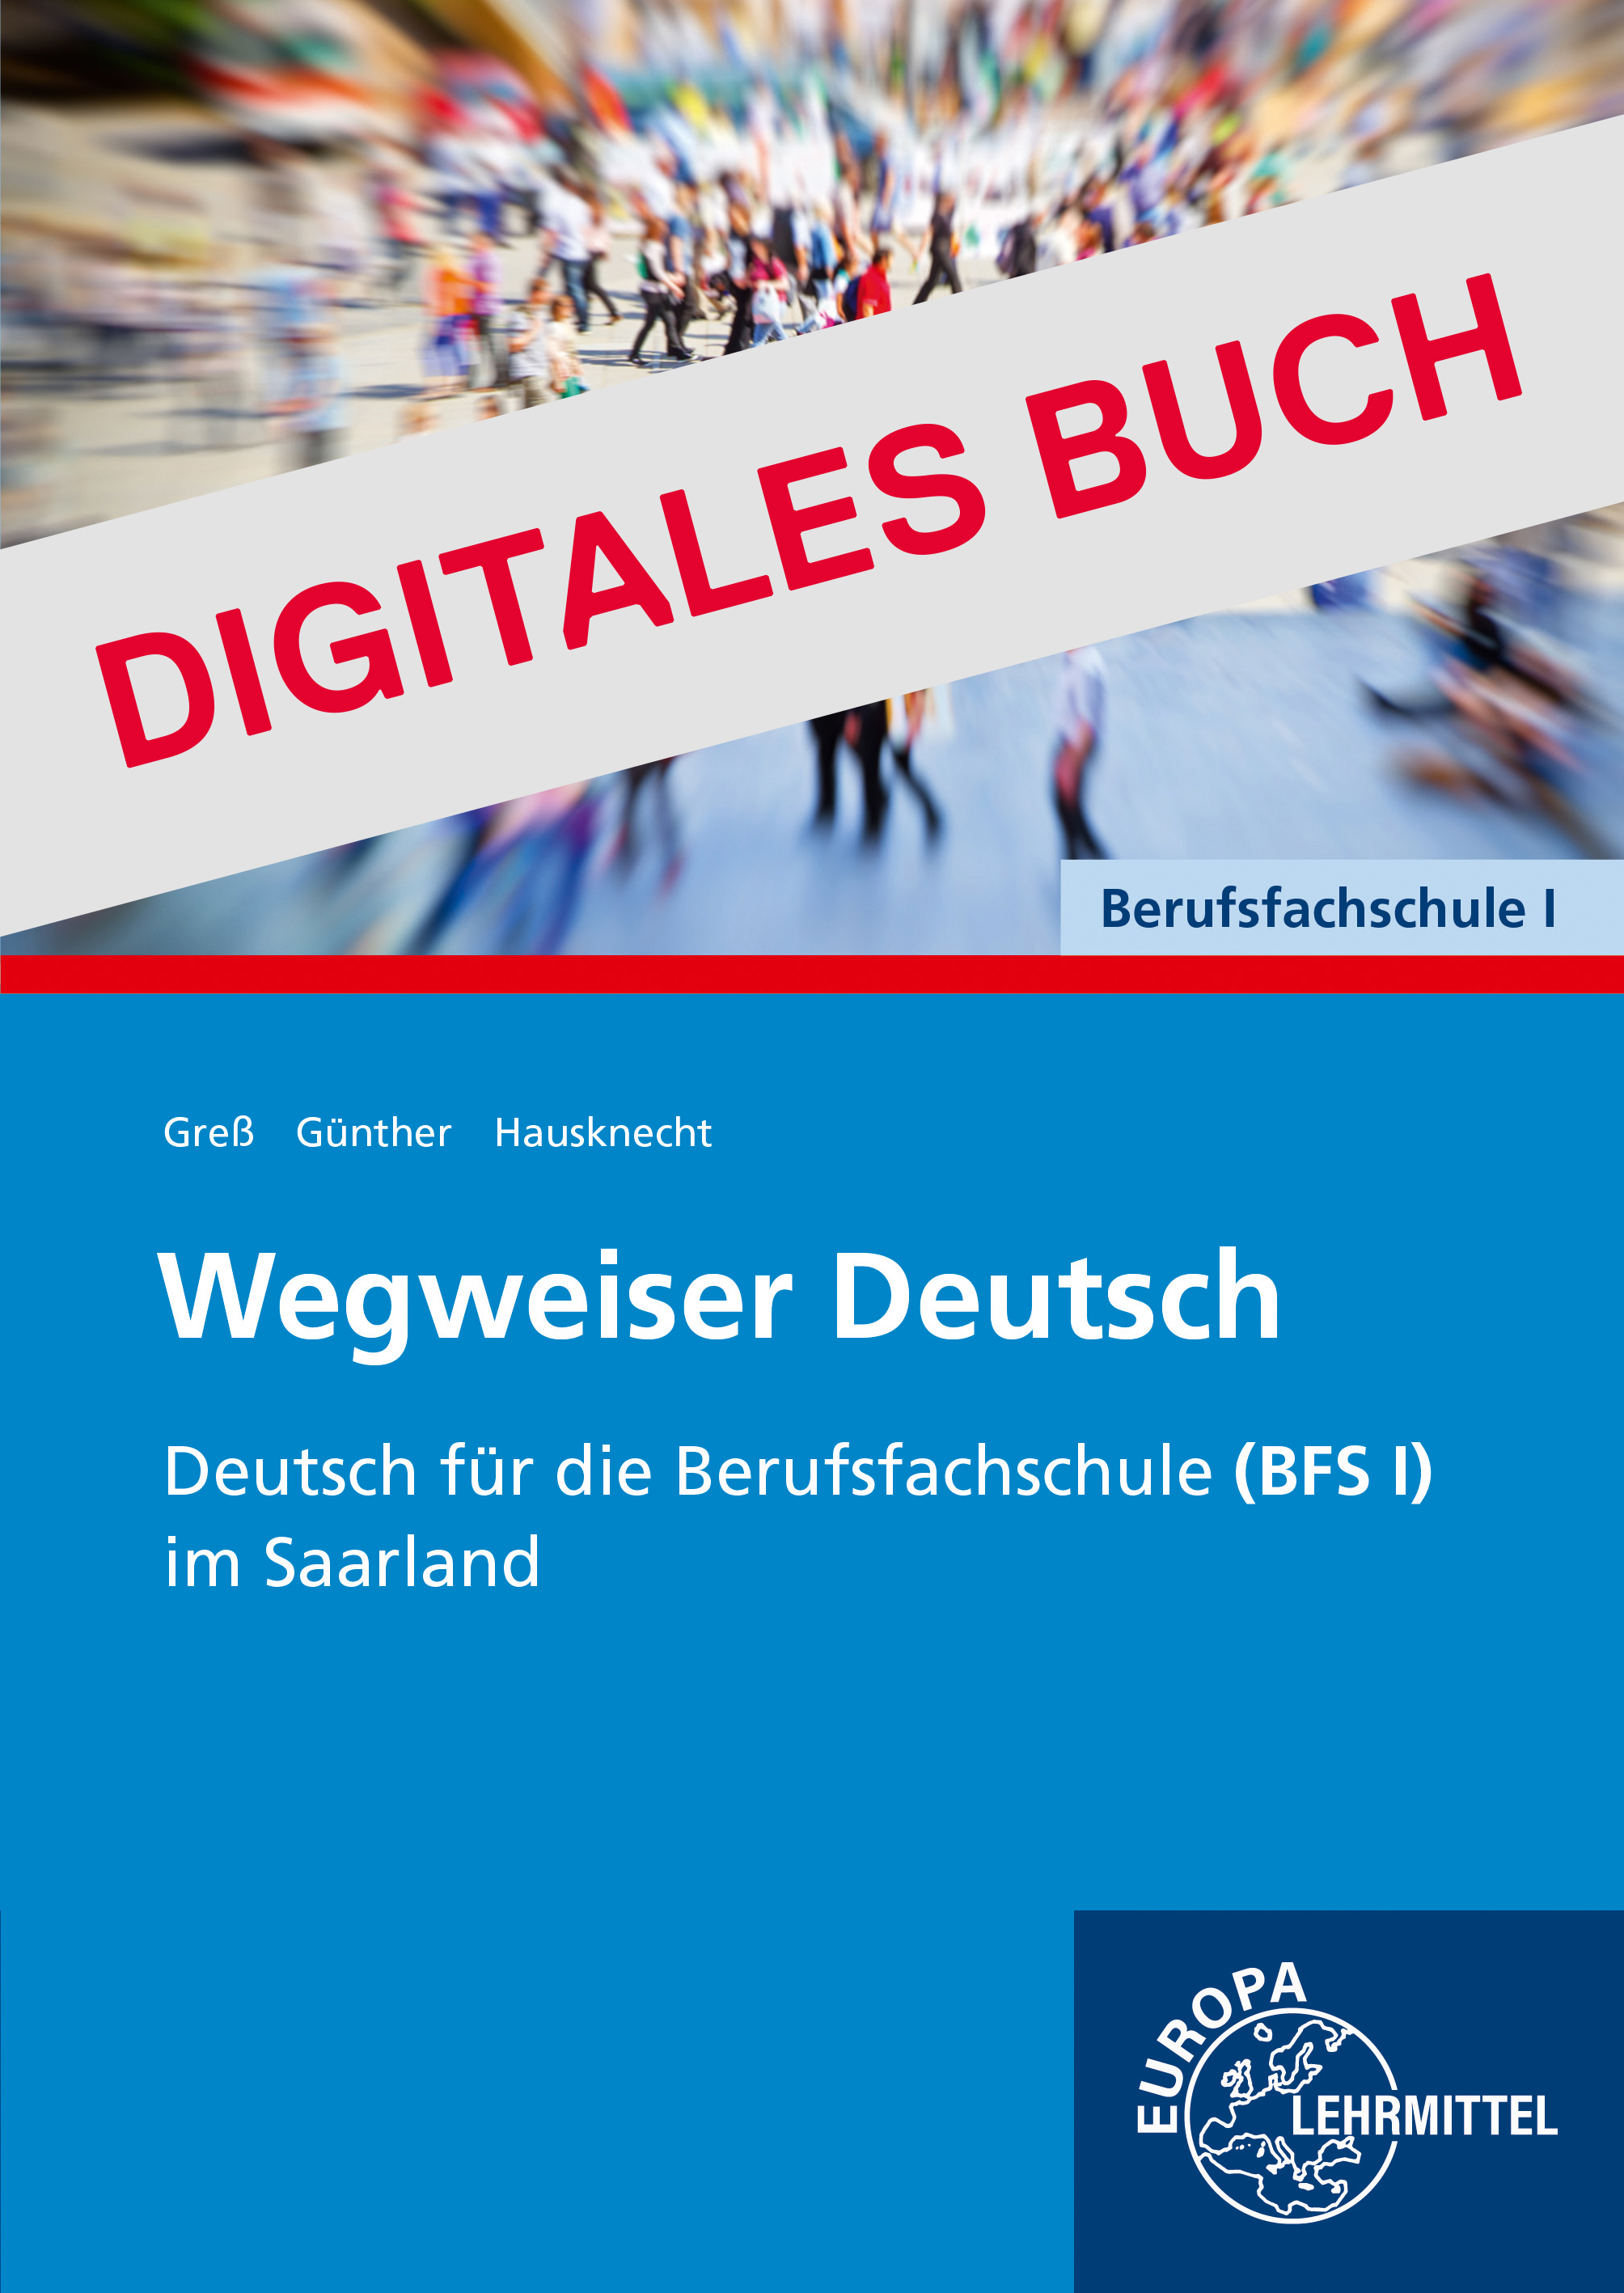 Wegweiser Deutsch Deutsch für die BFS I Saarland - Digitales Buch